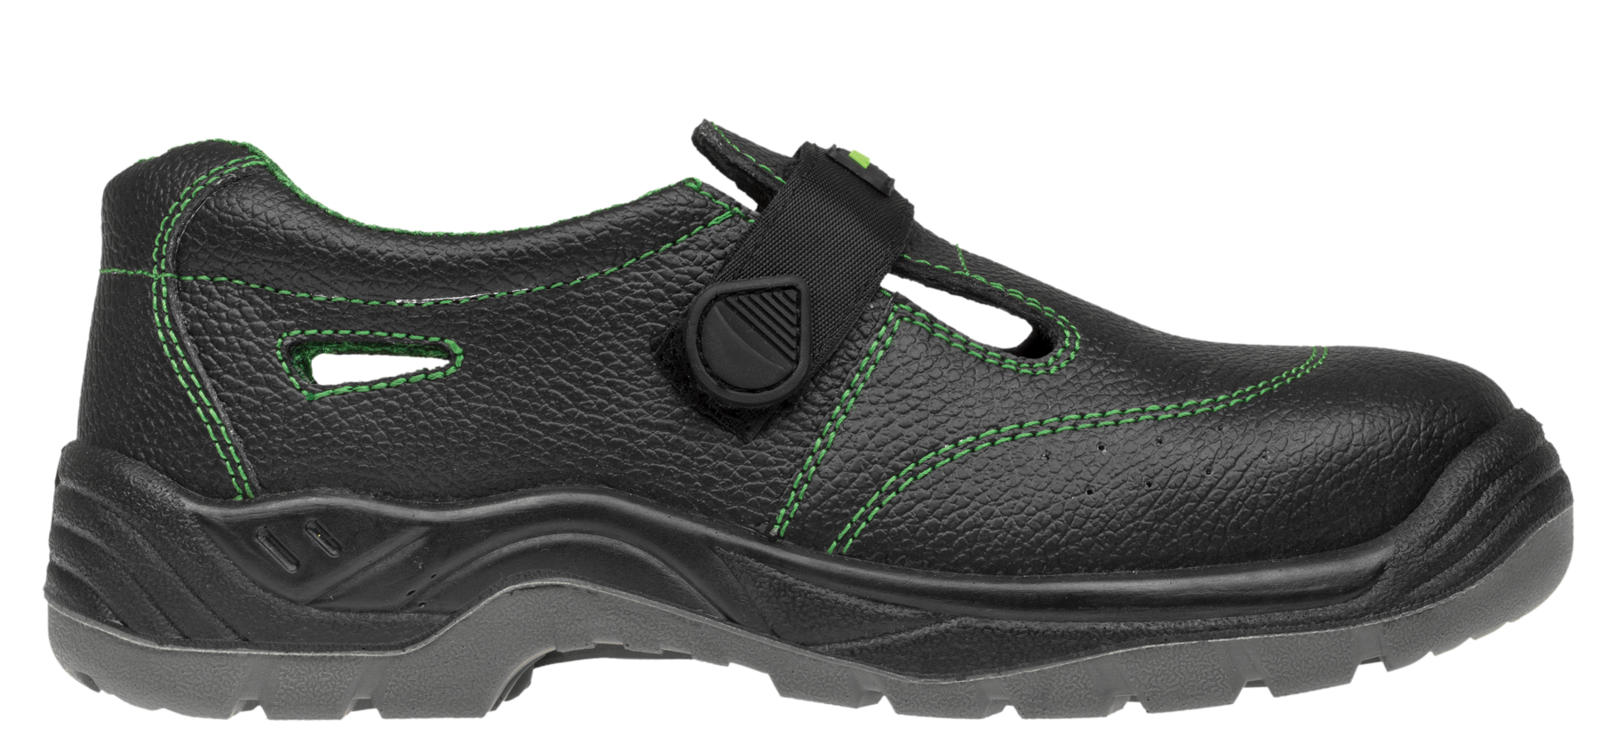 Bezpečnostné sandále Adamant Classic S1 - veľkosť: 36, farba: čierna